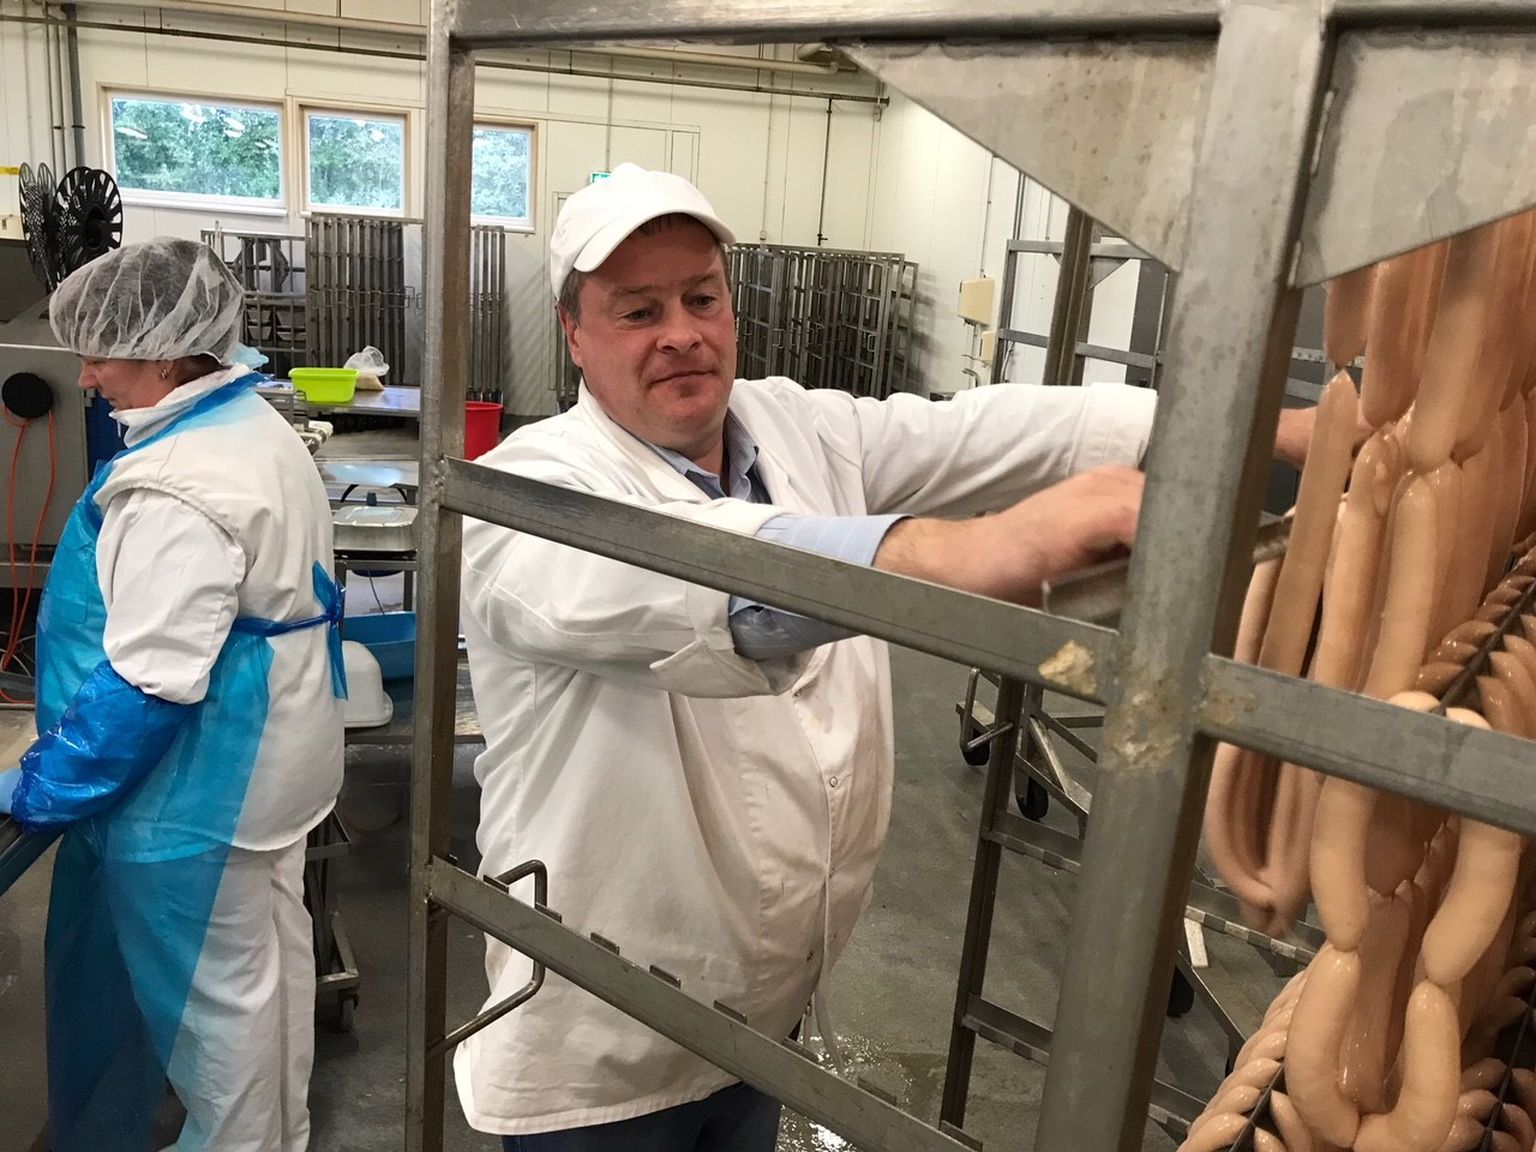 Ettevõtte tegevjuht Mairot Paks tutvustab tööstuse leivanumbriks olevaid lambasooles viinereid.